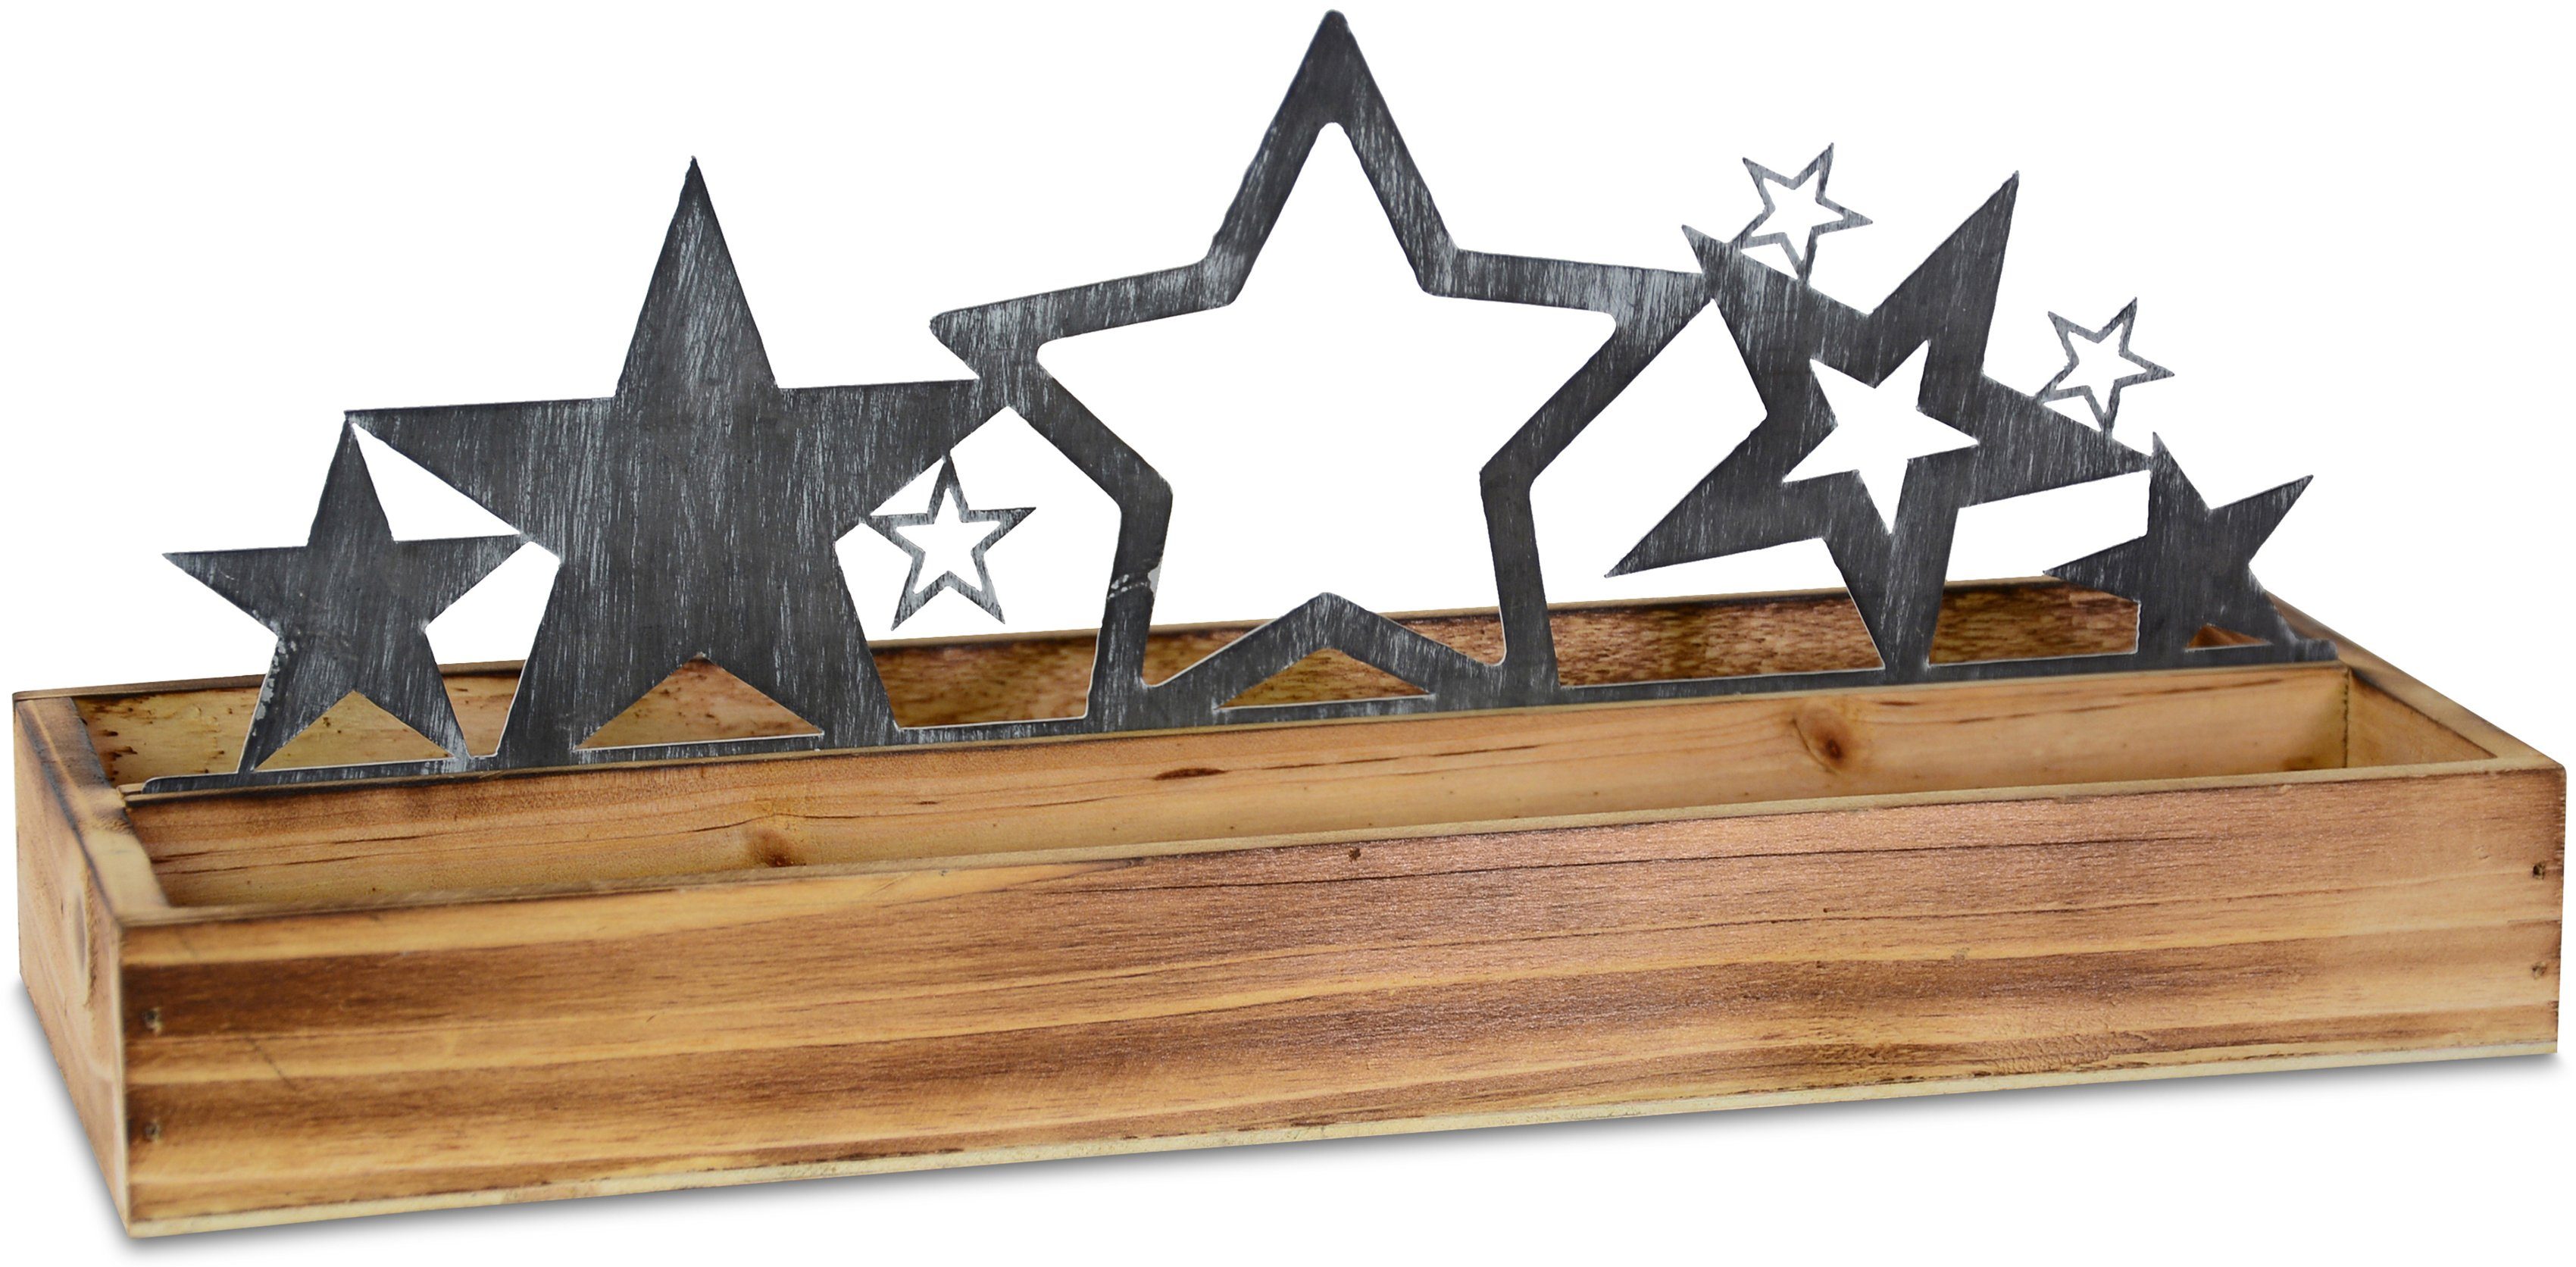 Sternensilhouette, Metall, Metall Advent-Tablett RIFFELMACHER WEINBERGER mit Weihnachtsdeko, Holz-Tablett Sternensilhouette, Tablett & Holz,